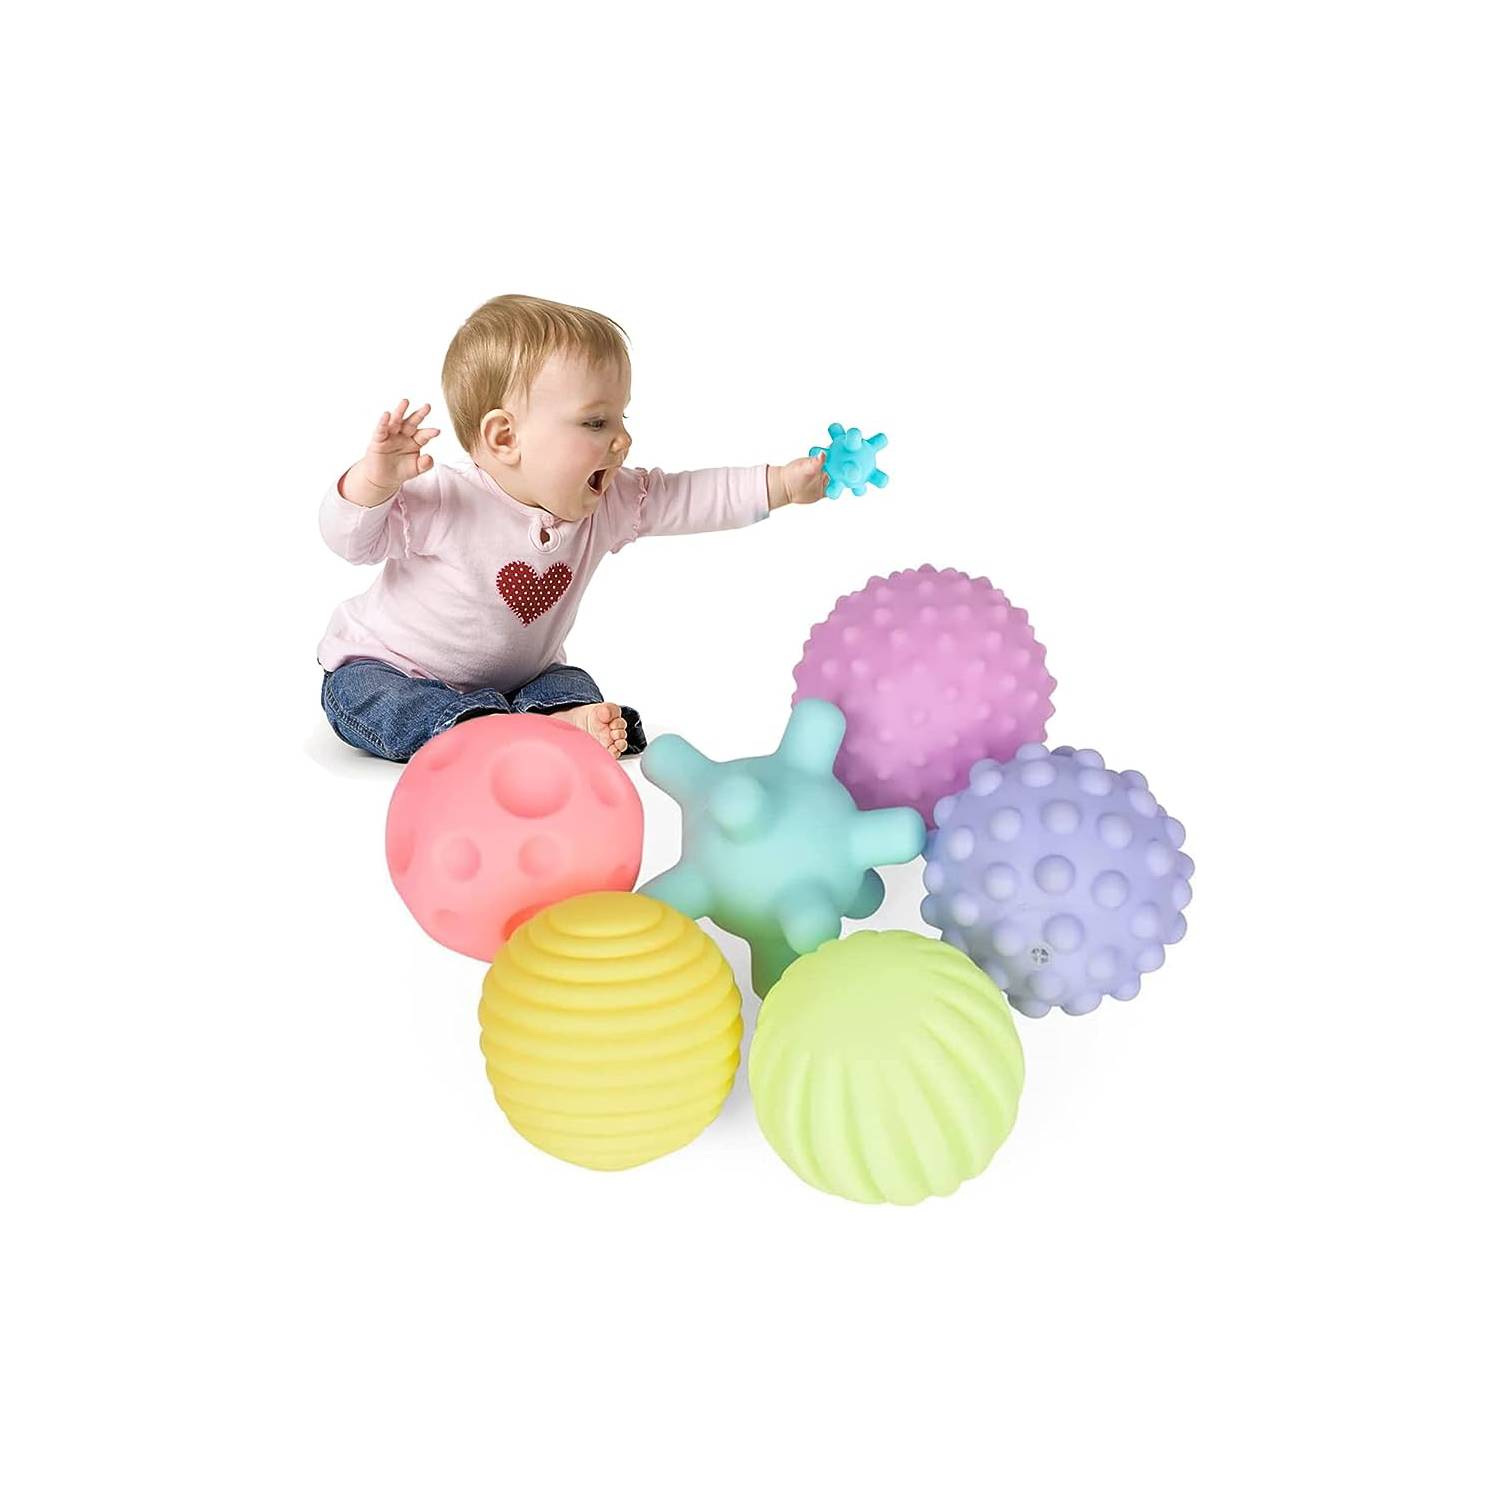 Juego de pelotas sensoriales texturizadas para bebé, juguete de